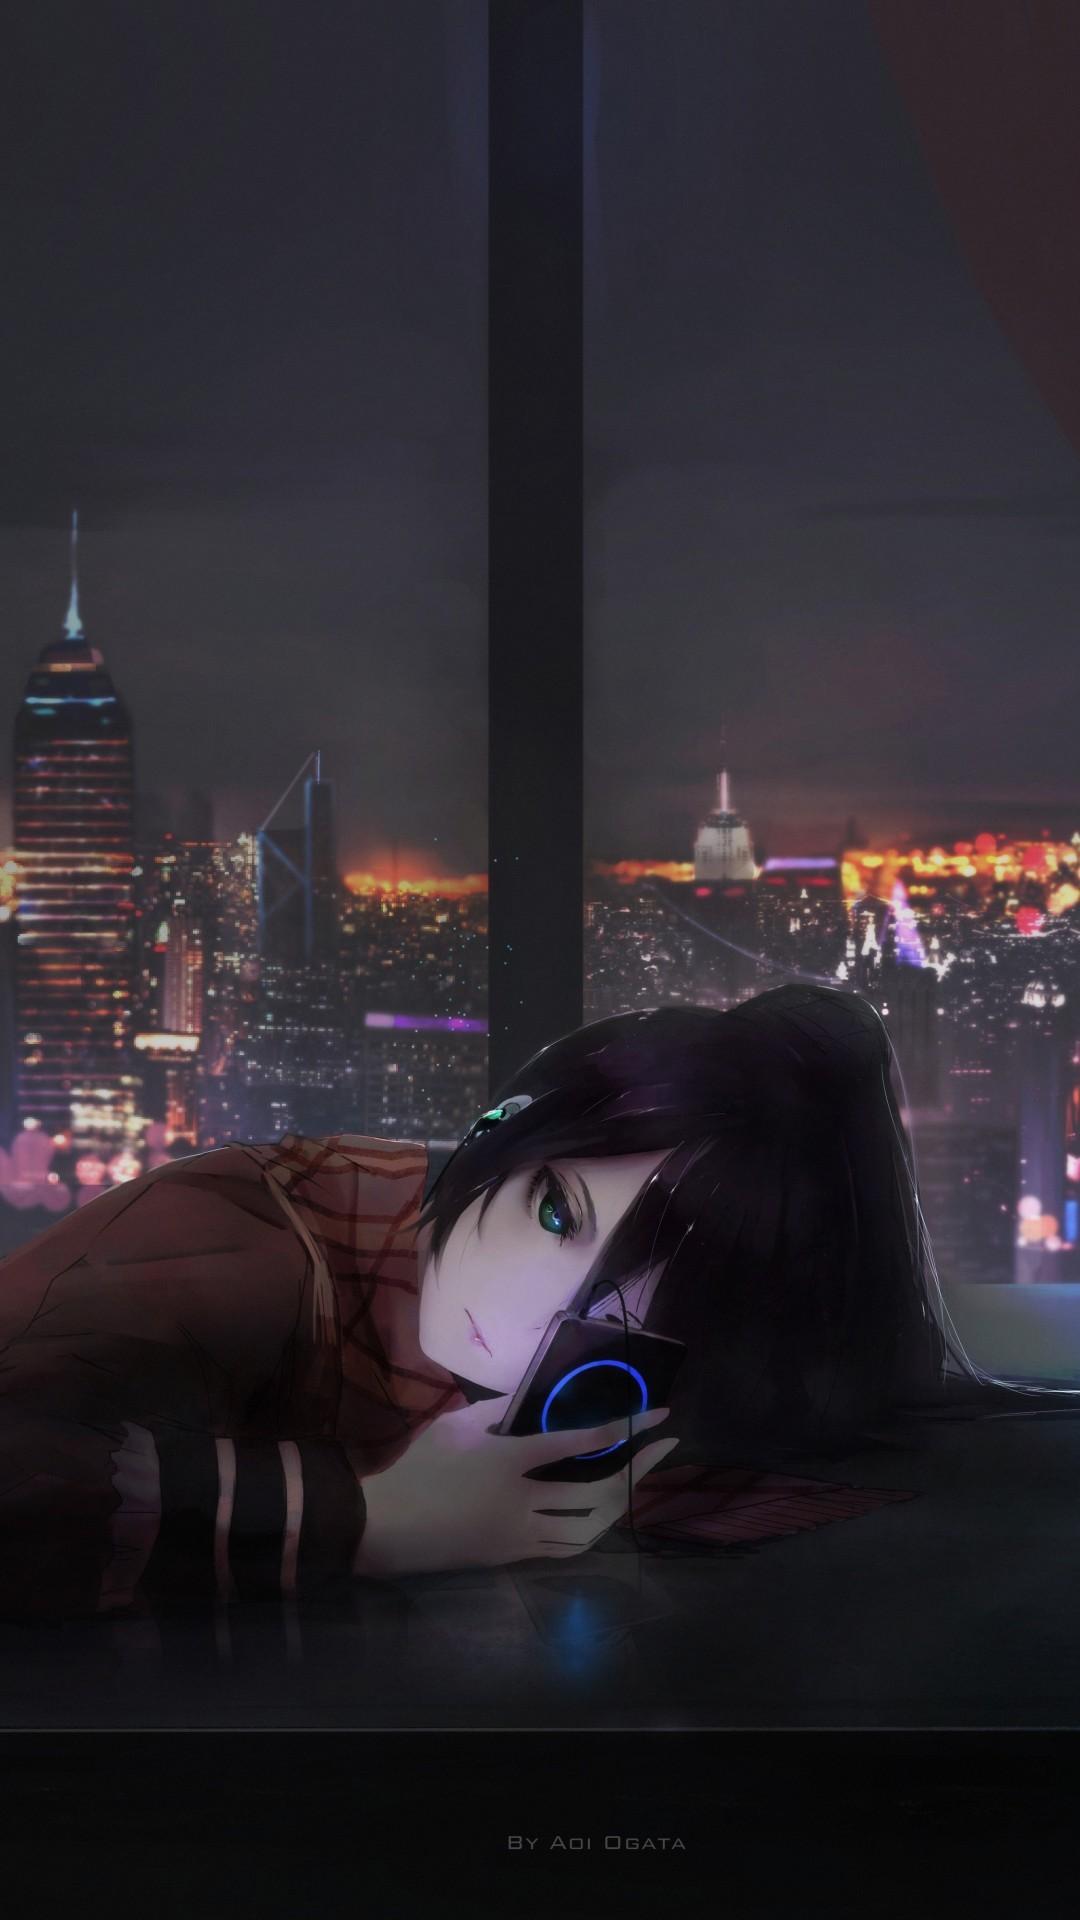 Anime Girl Sad Alone Wallpapers Top Free Anime Girl Sad Alone Backgrounds Wallpaperaccess